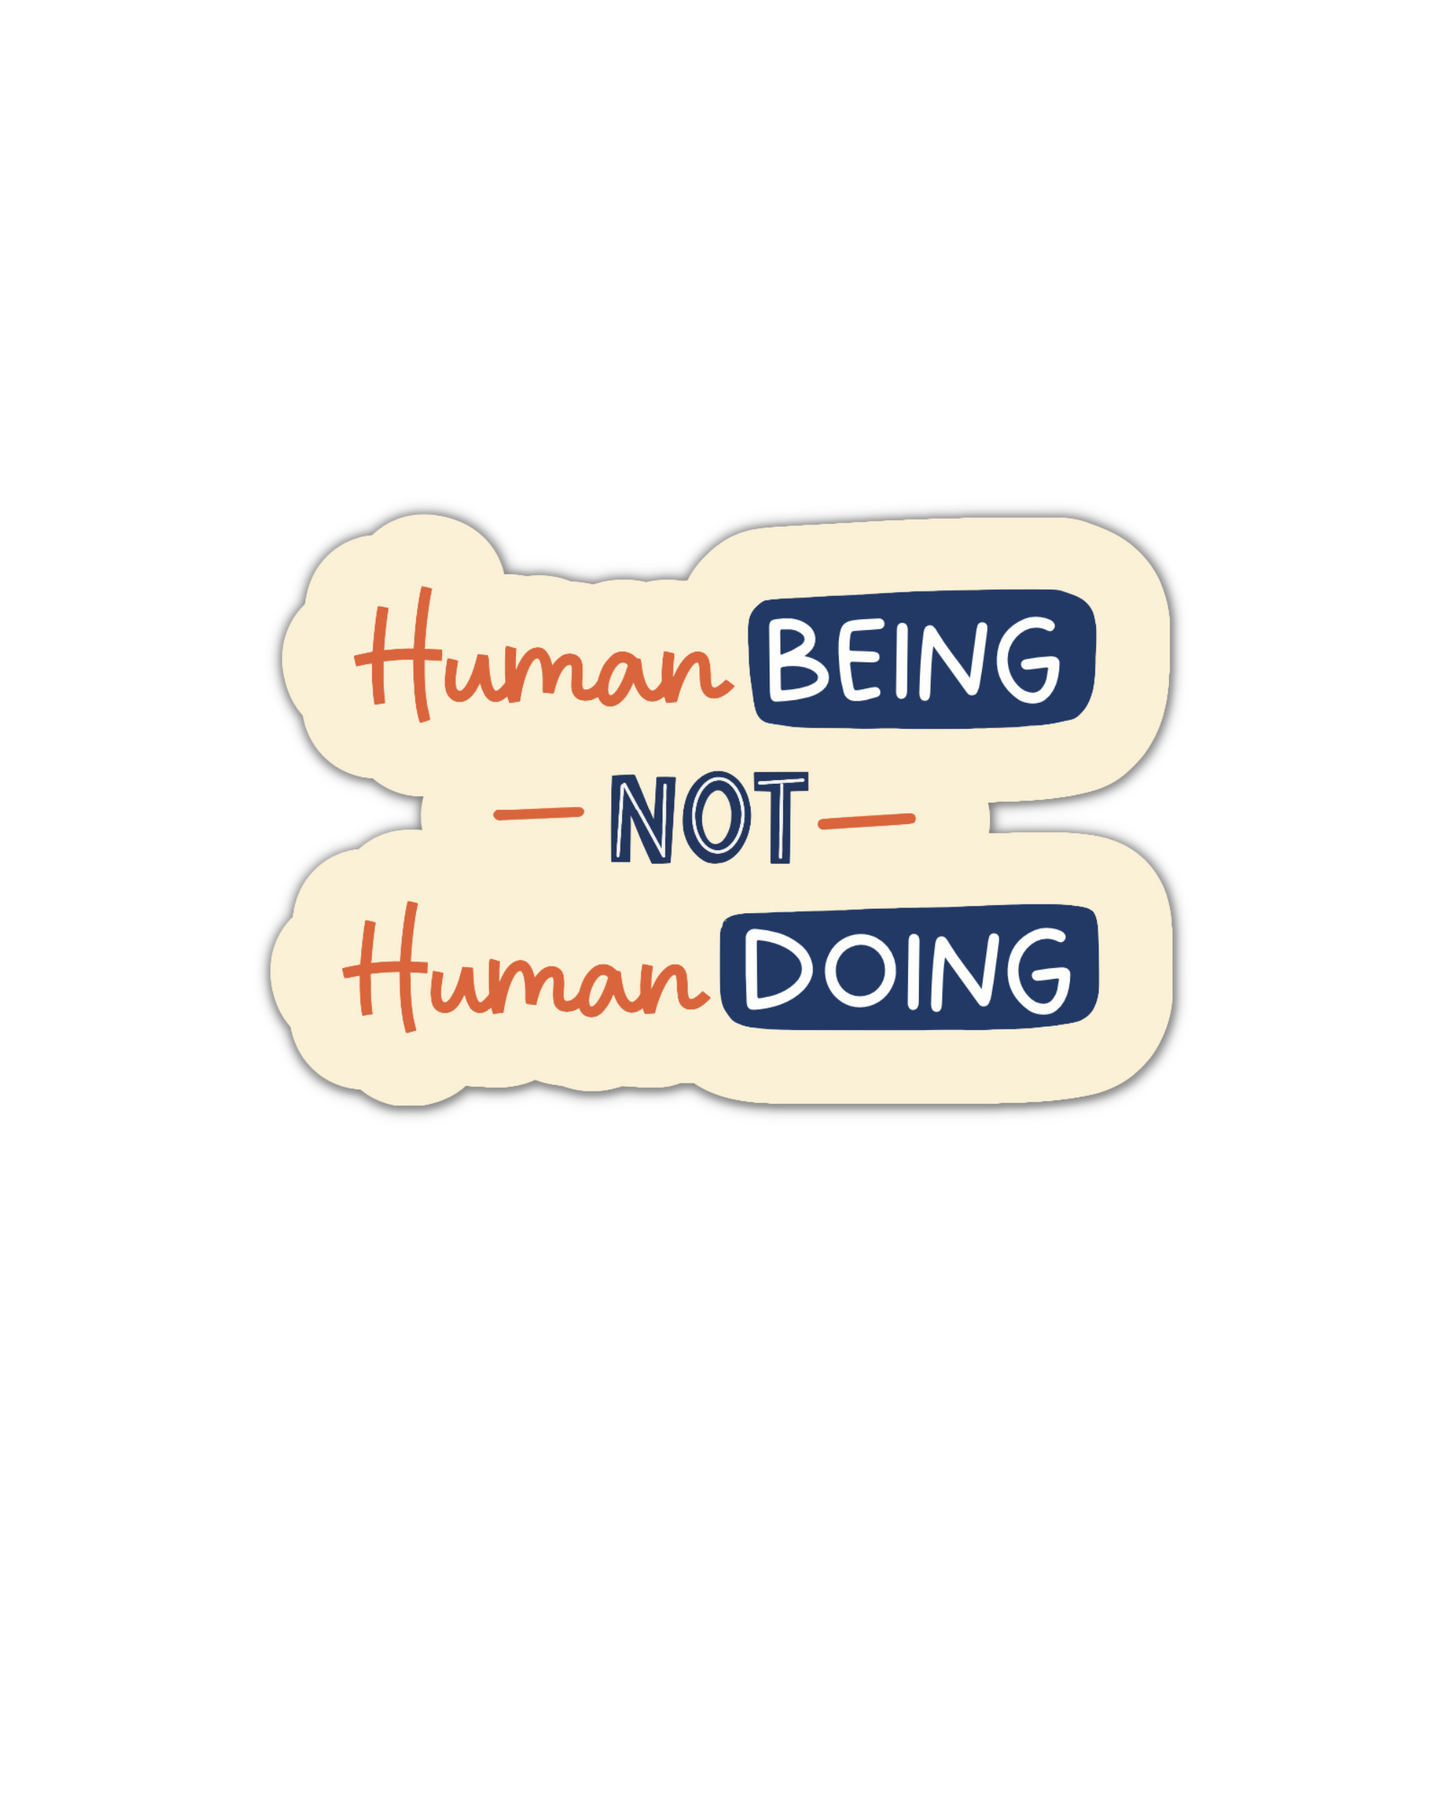 Human Being not Human Doing vinyl sticker